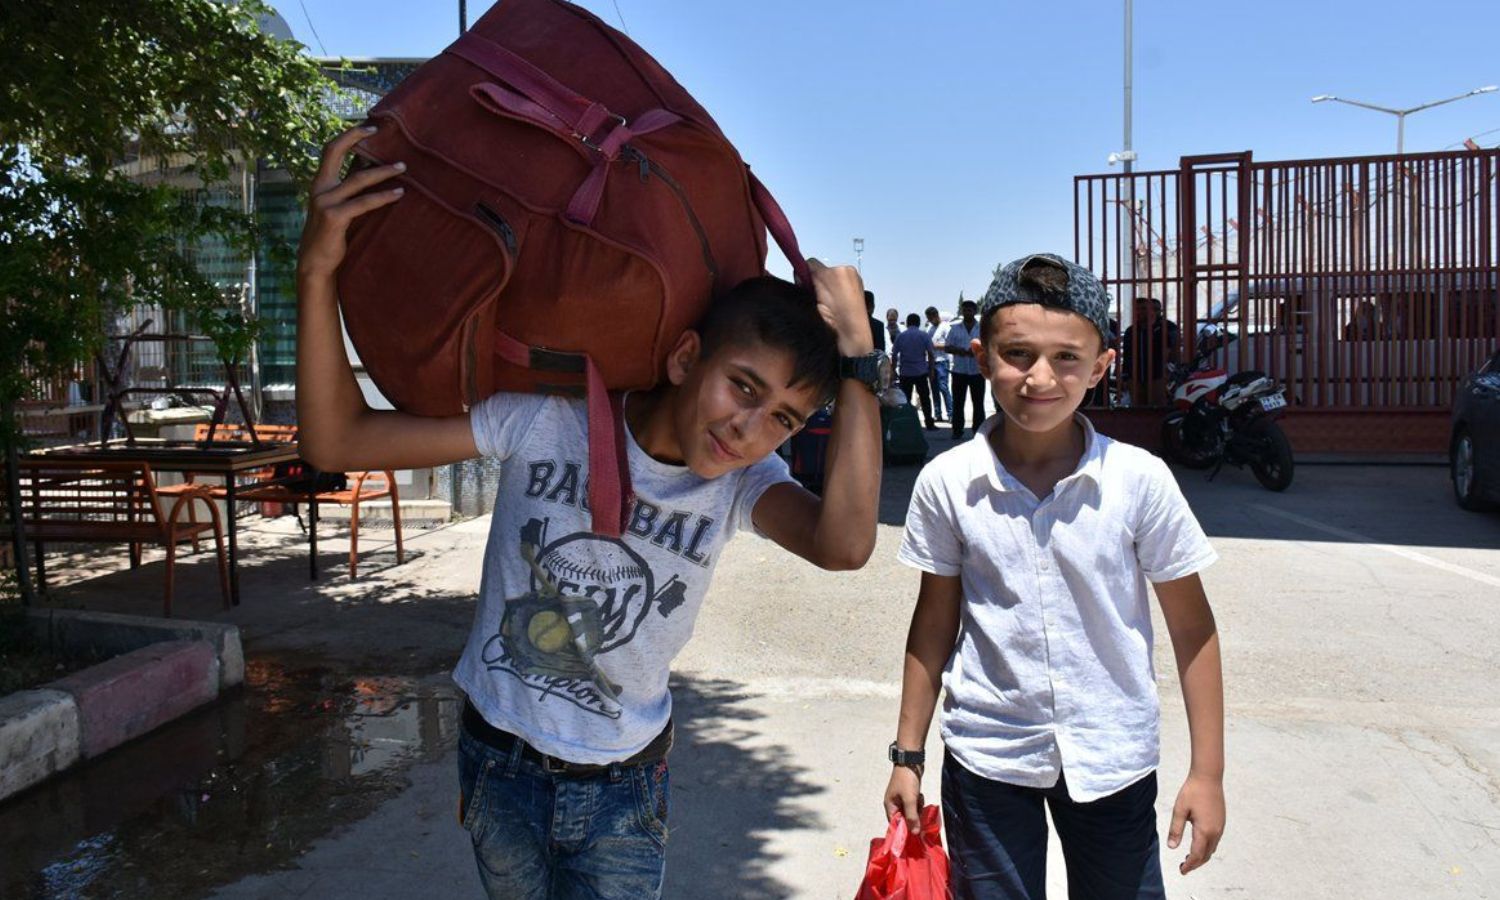 Syrian children entering Turkey through the Bab al-Salama border crossing - May 23, 2019 (Bab al-Salama crossing)